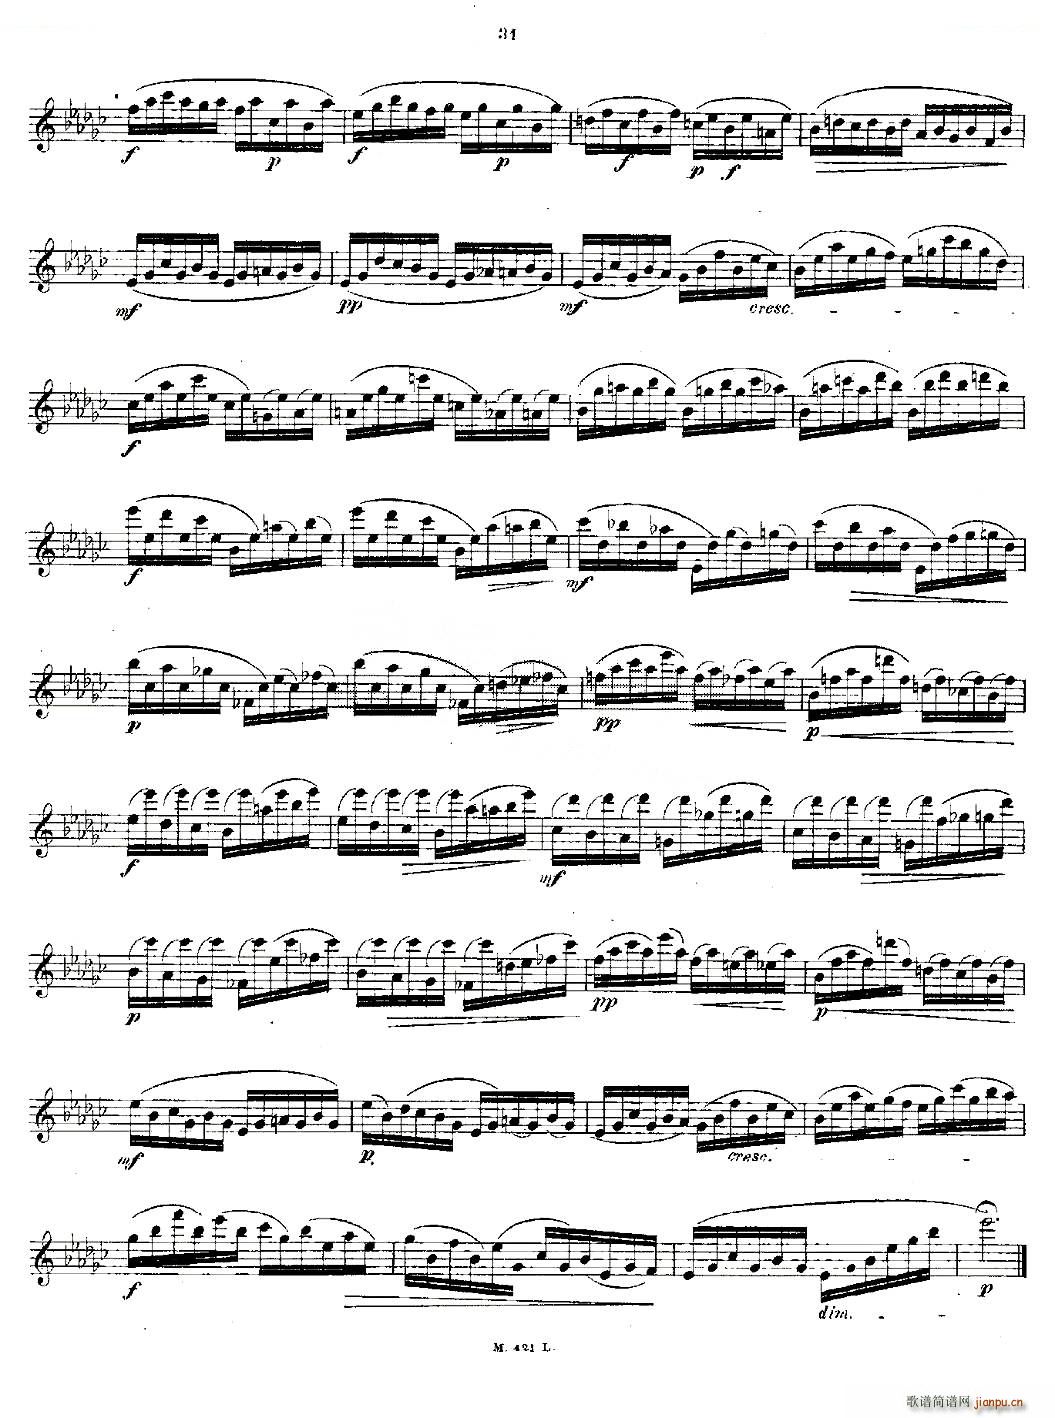 24首长笛练习曲 Op 15 之11 15 铜管(笛箫谱)9